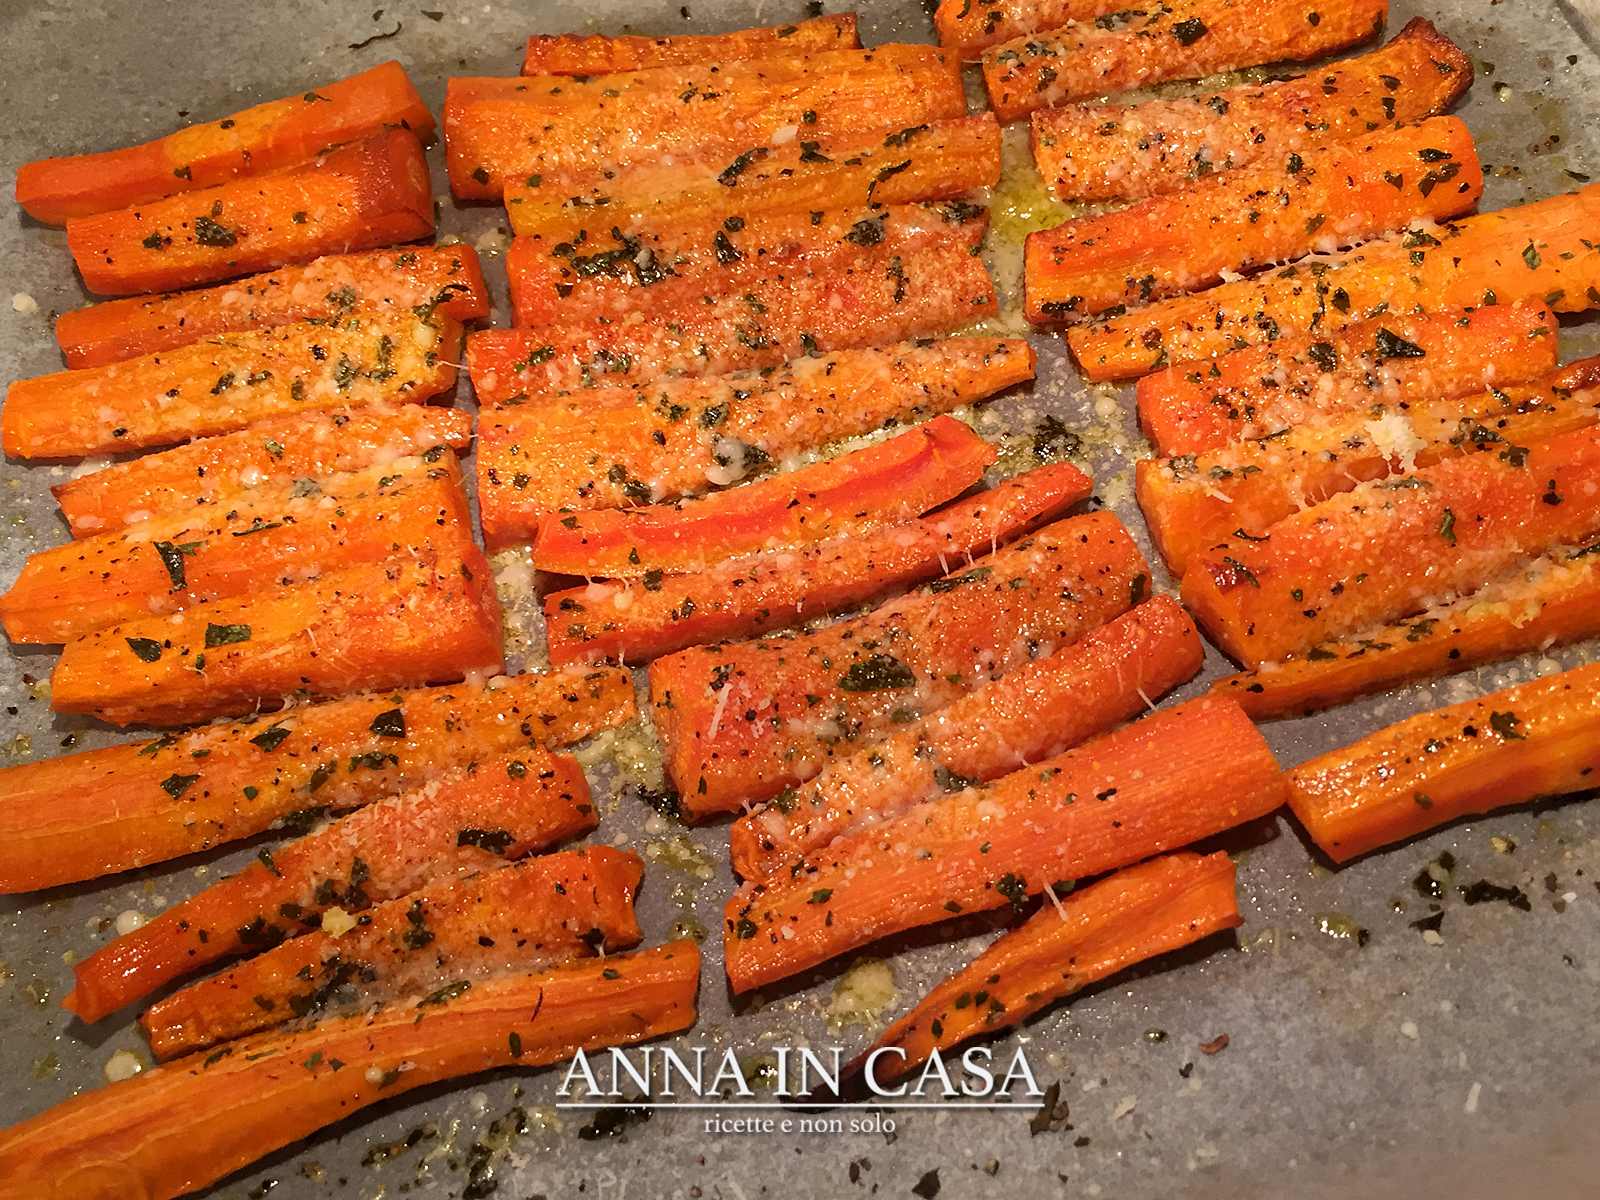 Anna in Casa: ricette e non solo: Bastoncini saporiti di carote al